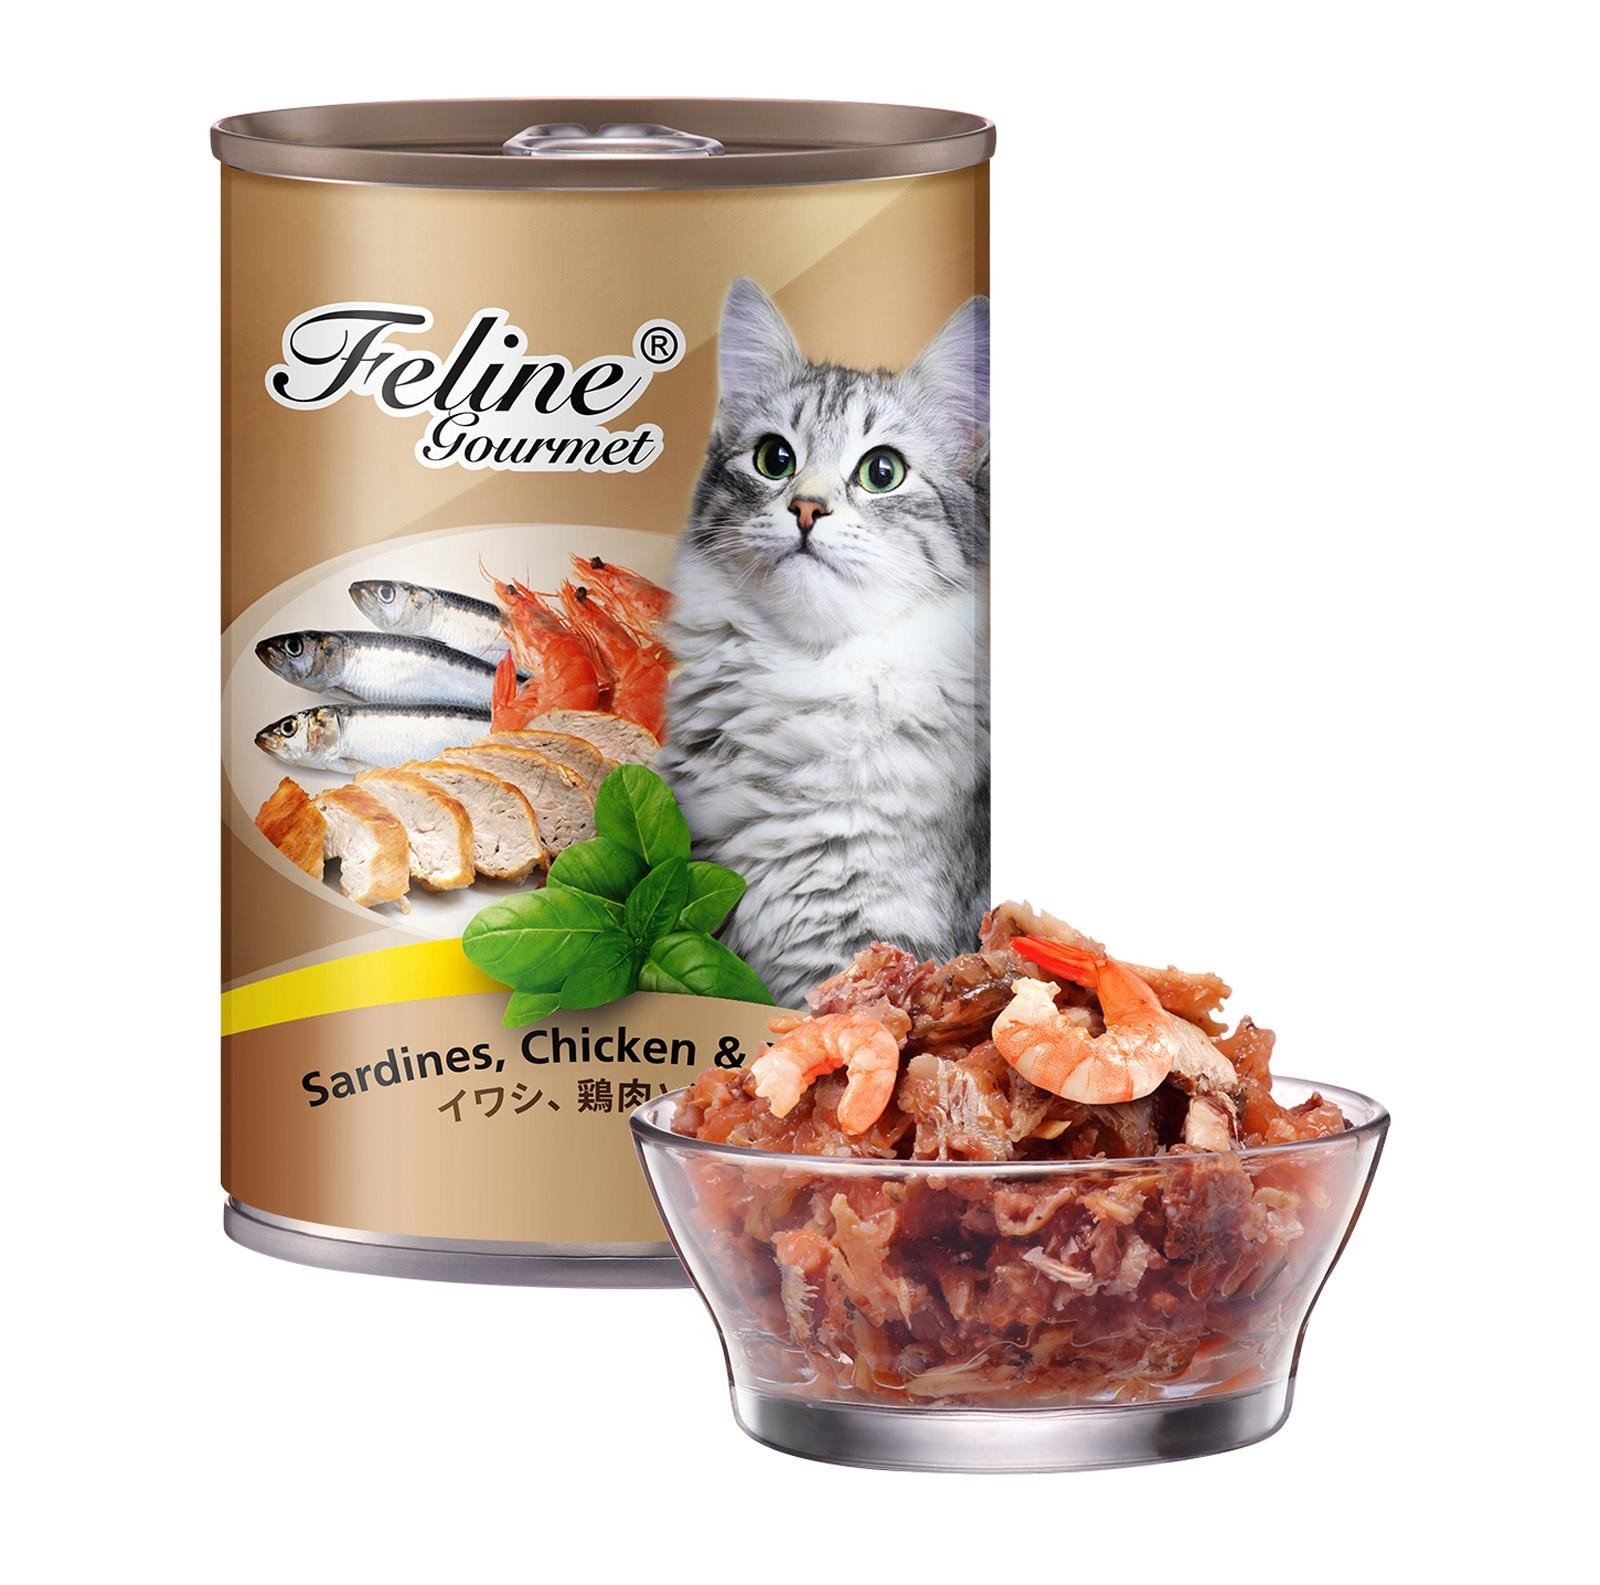 Feline Gourmet Wet Cat Food